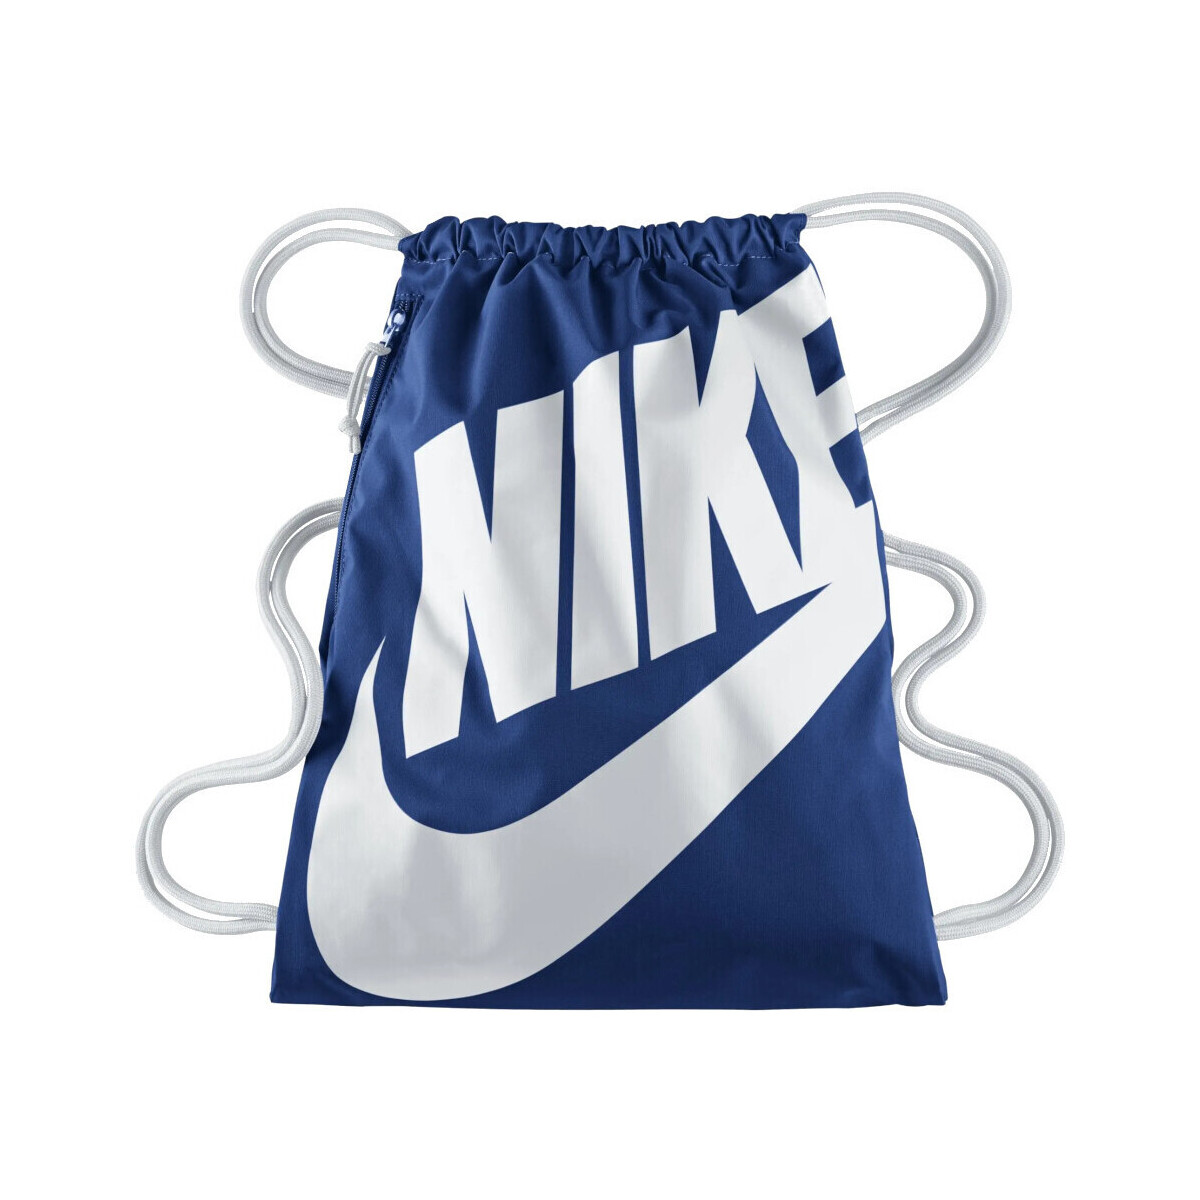 Malas Saco de desporto Nike BA5128 Azul